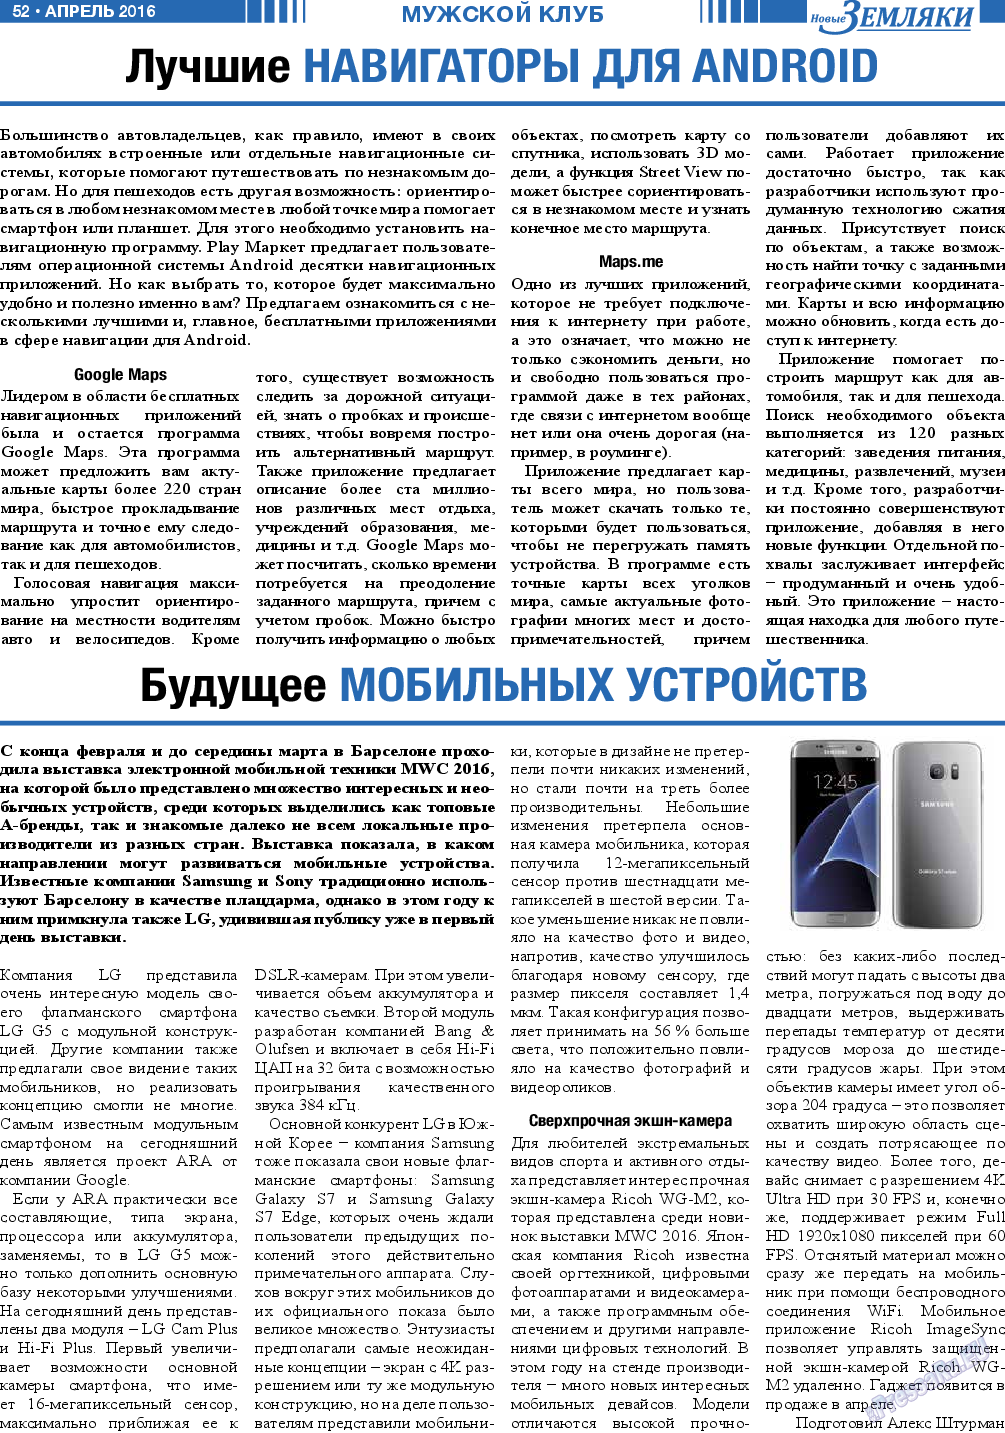 Новые Земляки, газета. 2016 №4 стр.52